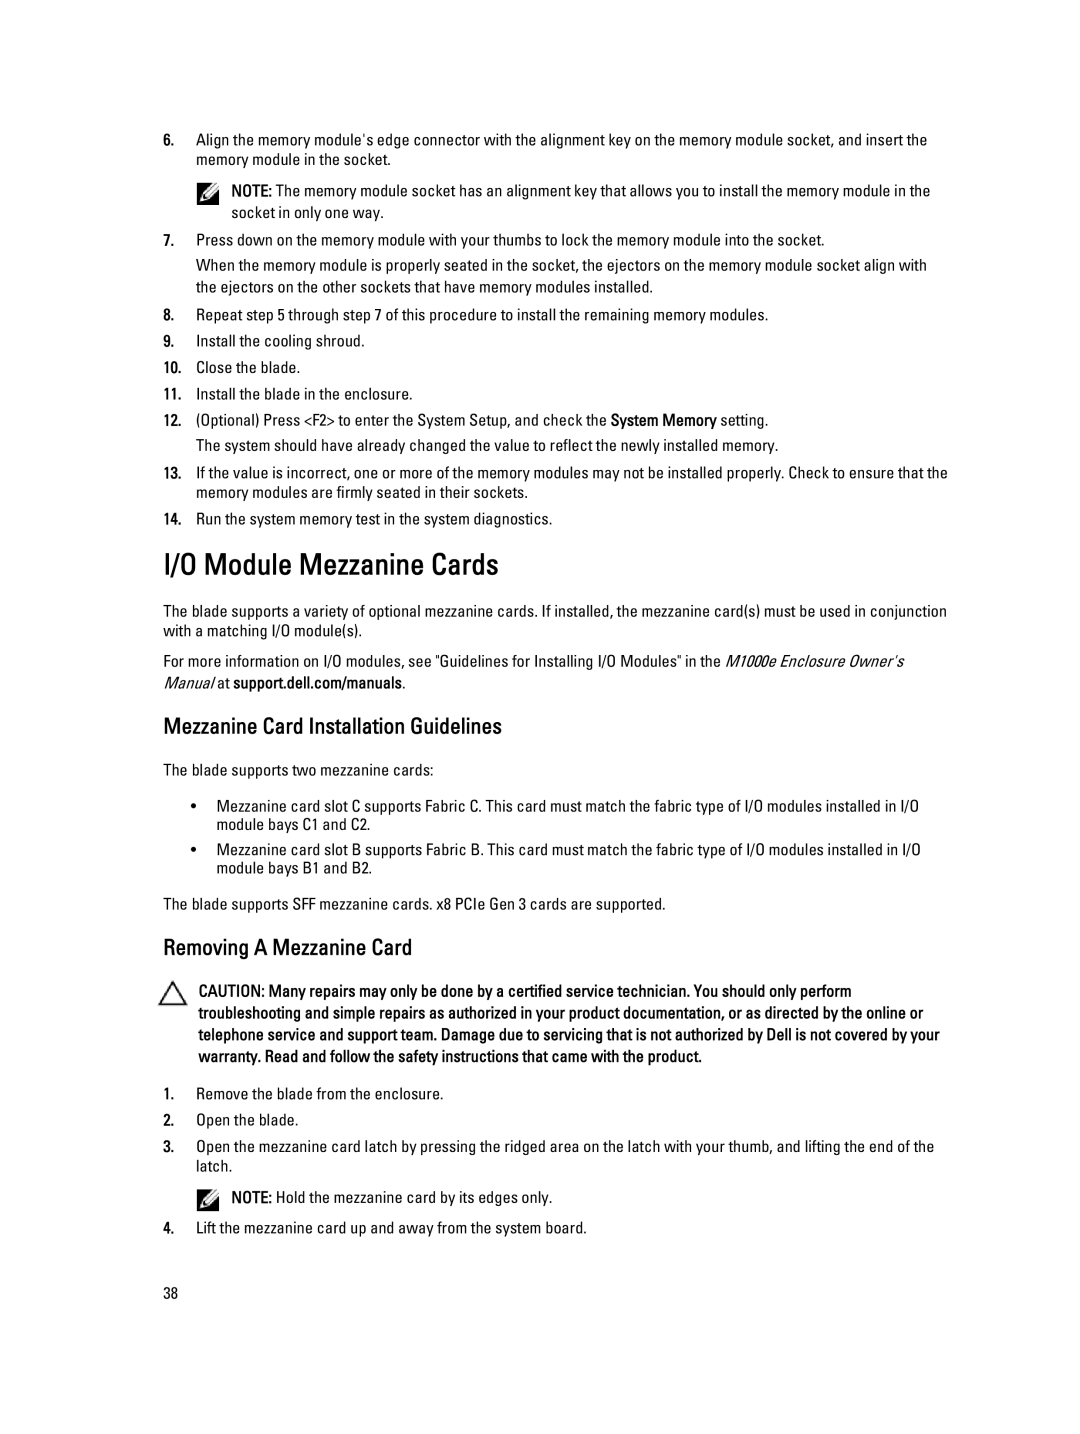 Dell M620 owner manual Module Mezzanine Cards, Mezzanine Card Installation Guidelines, Removing a Mezzanine Card 